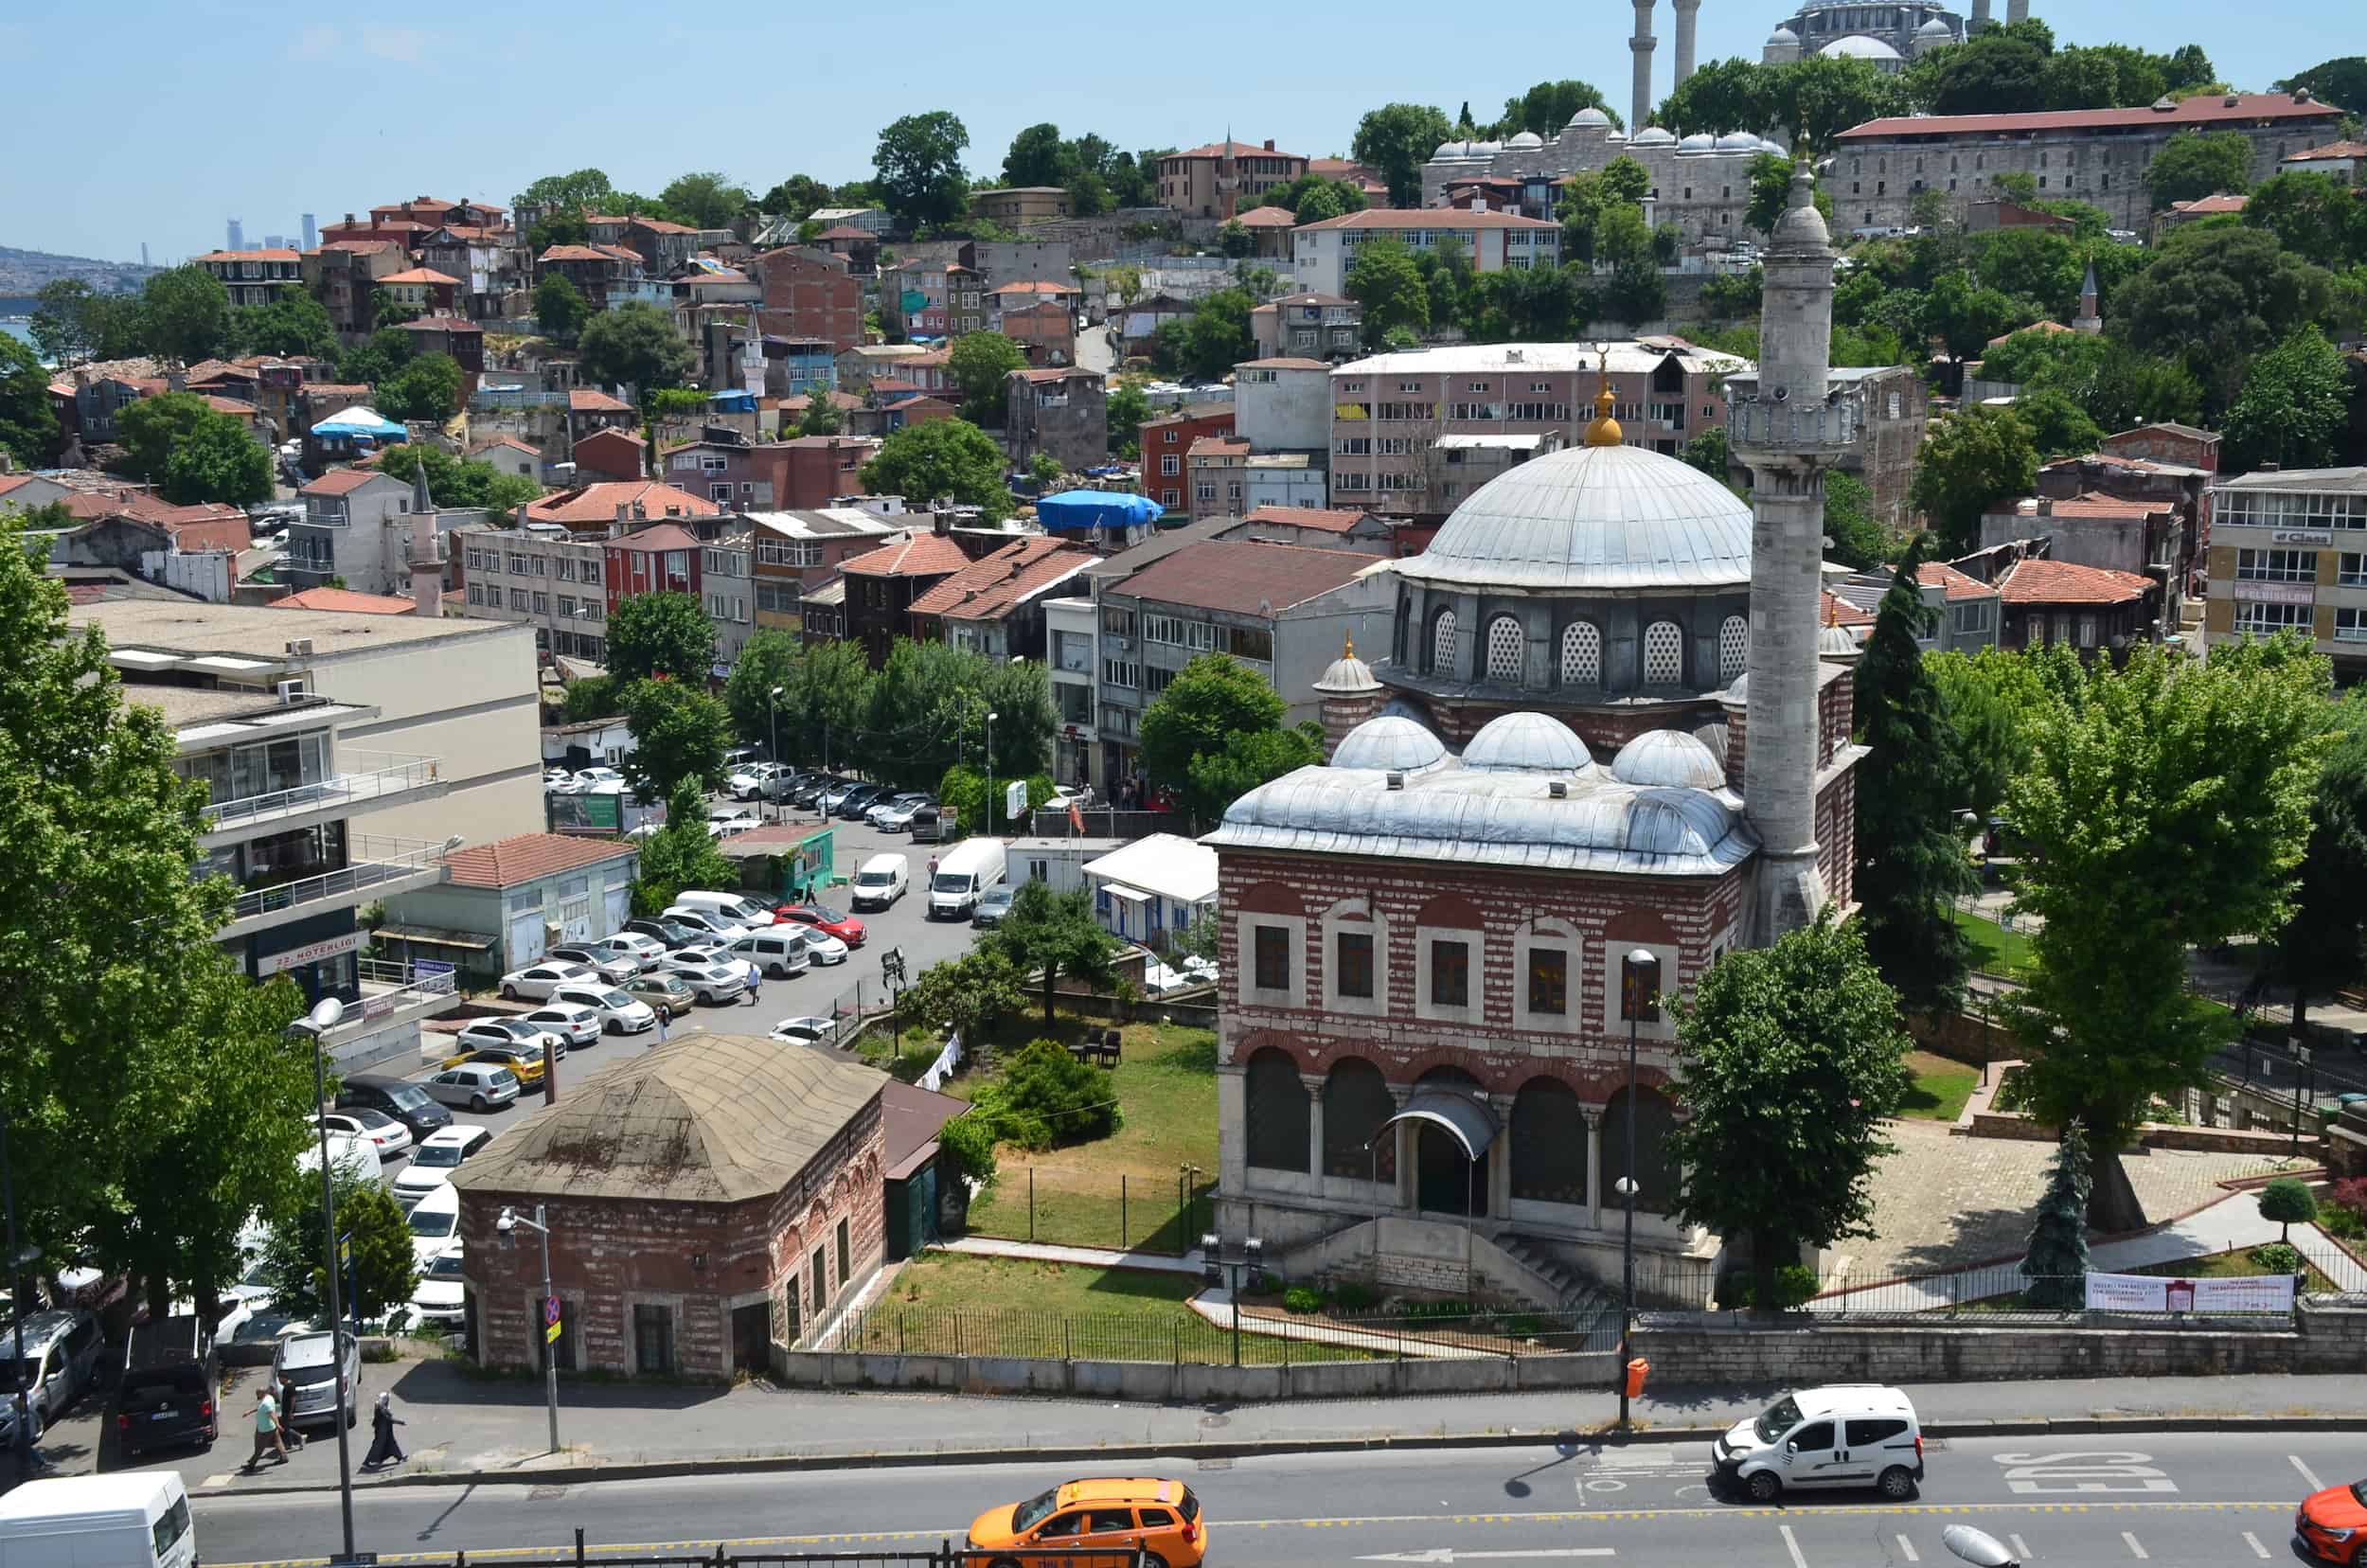 Şebsefa Hatun Mosque in Unkapanı, Istanbul, Turkey